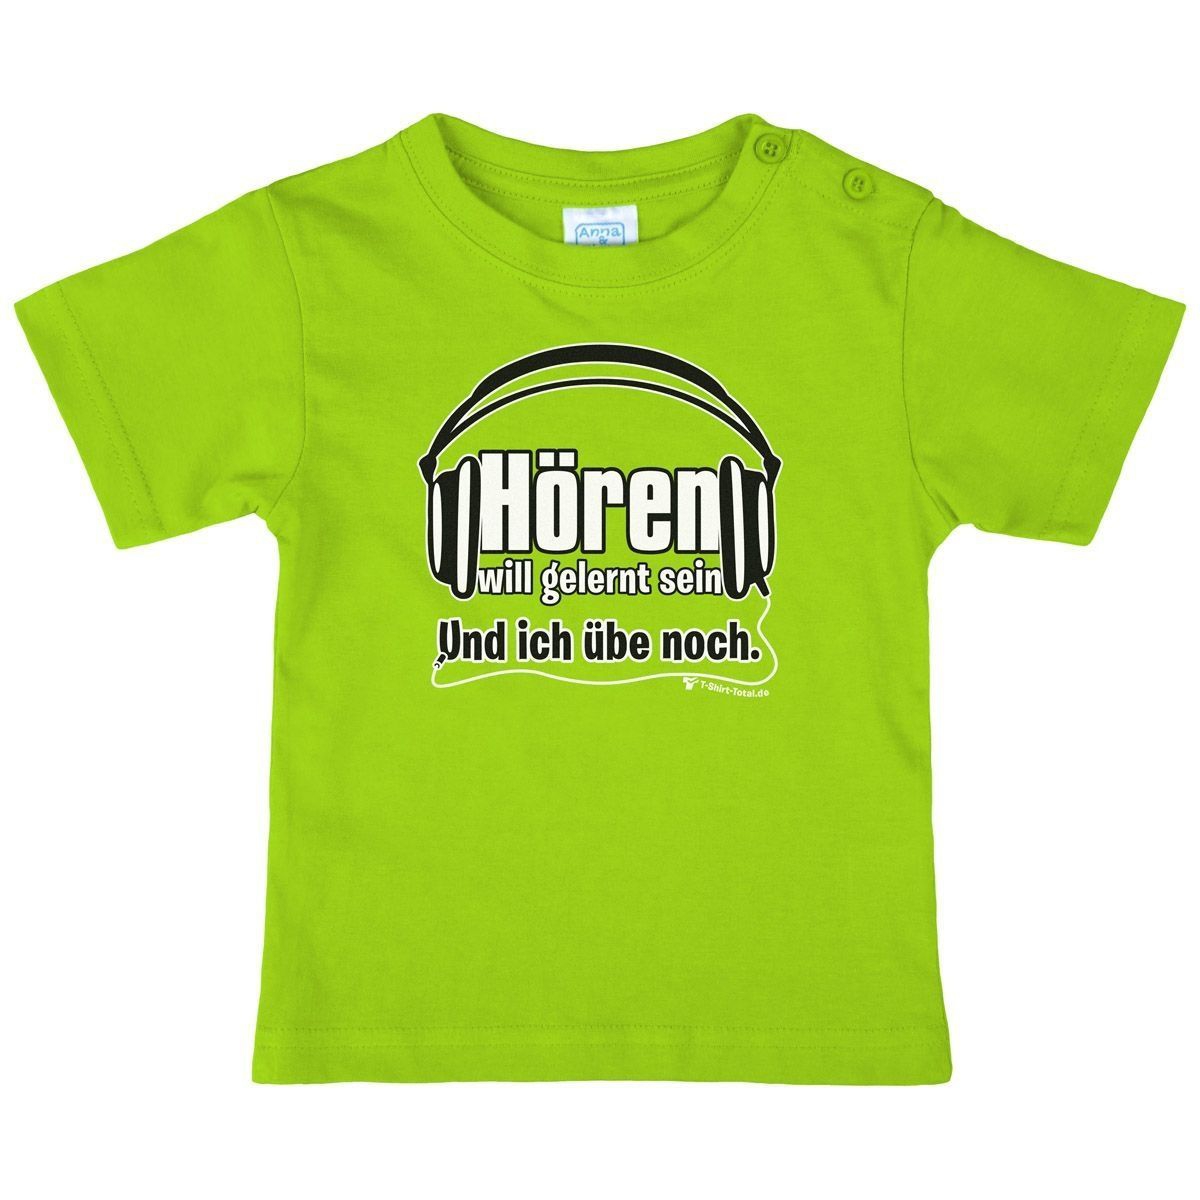 Hören will gelernt sein Kinder T-Shirt hellgrün 104